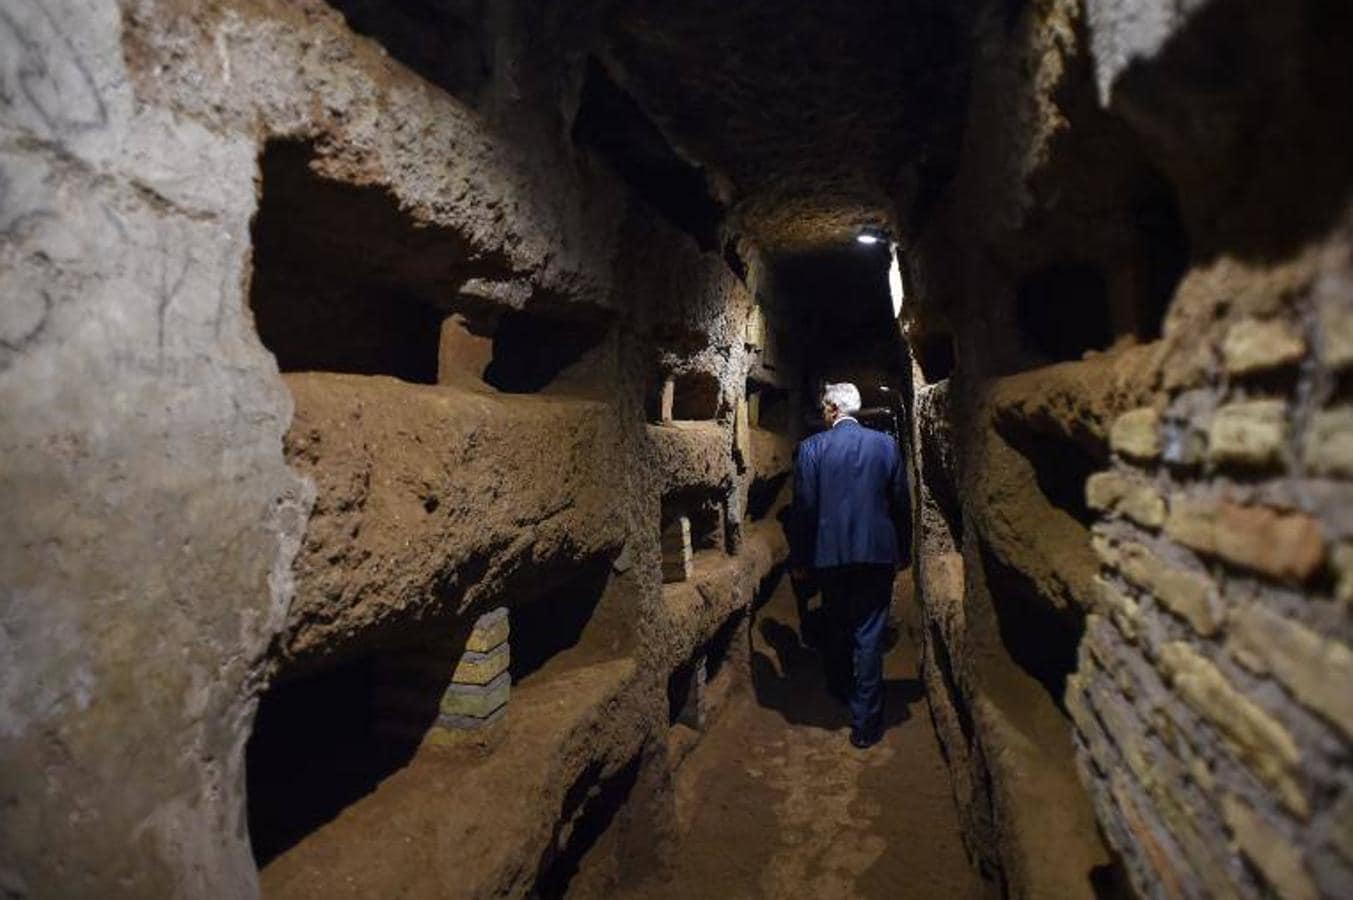 Los trabajos han costado cerca de 60.000 euros a la Comisión vaticana que se ocupa de arqueología.